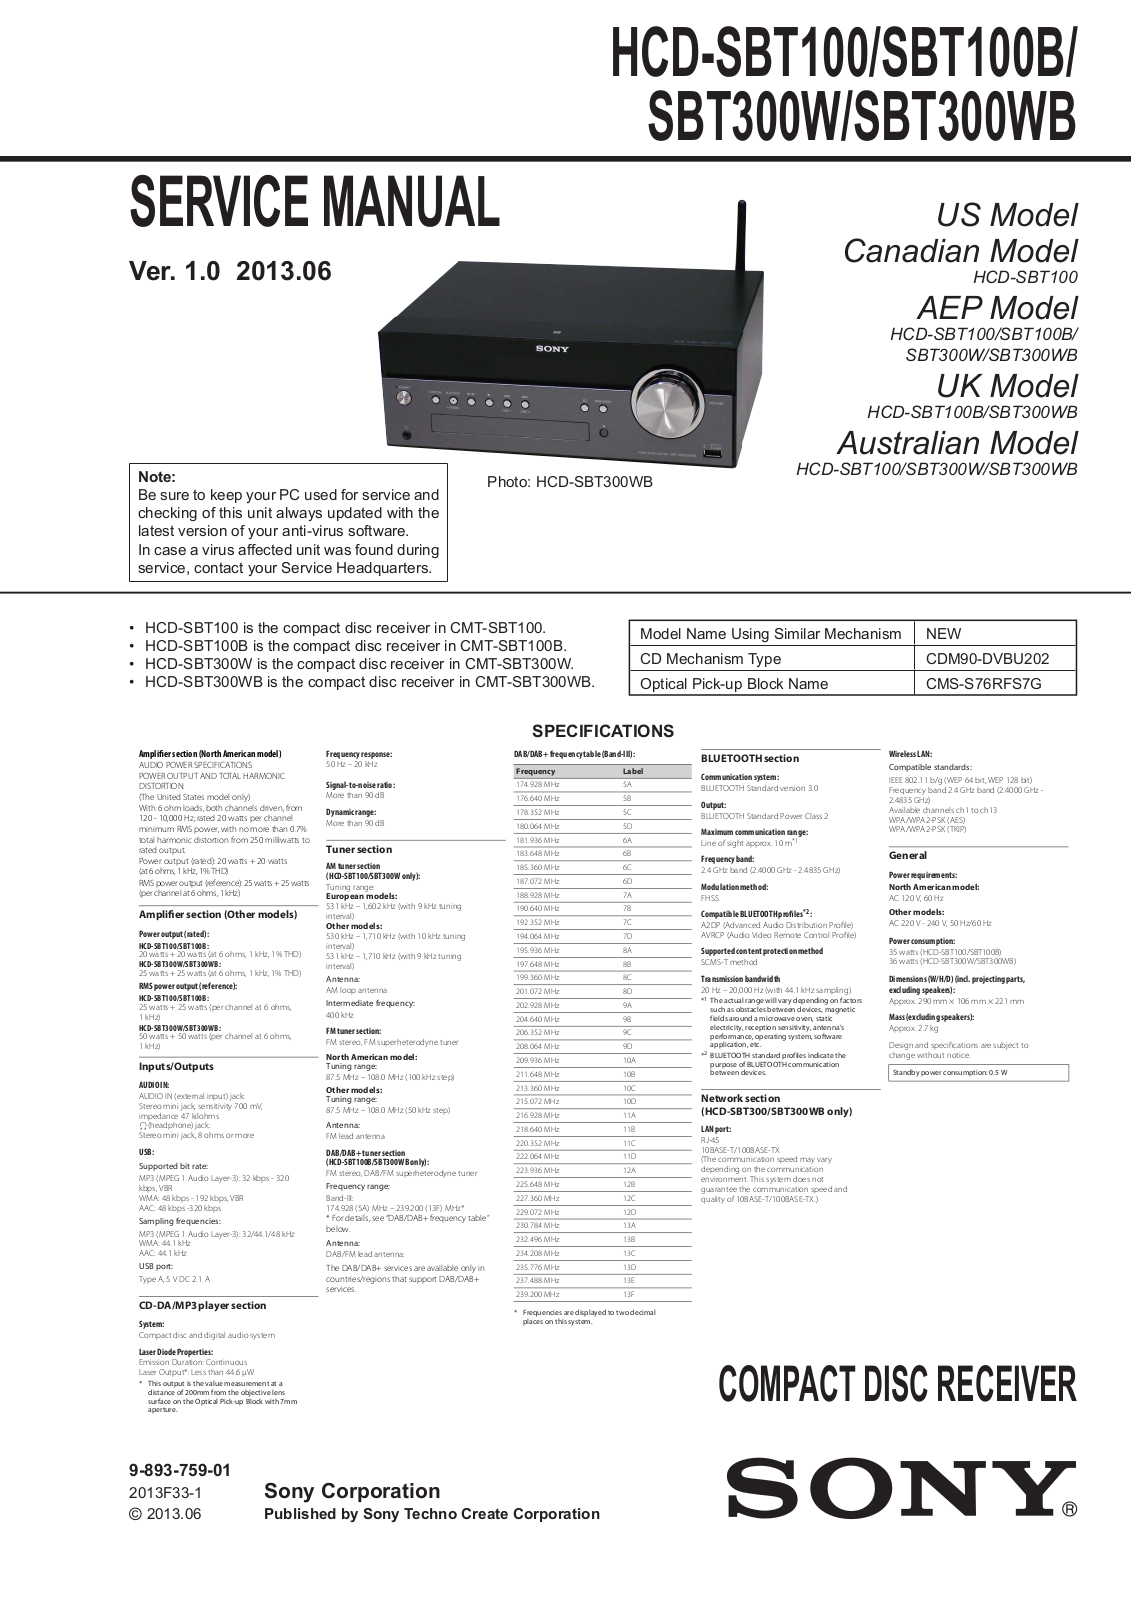 Sony HCD-SBT100, HCD-SBT300W, WB Schematic